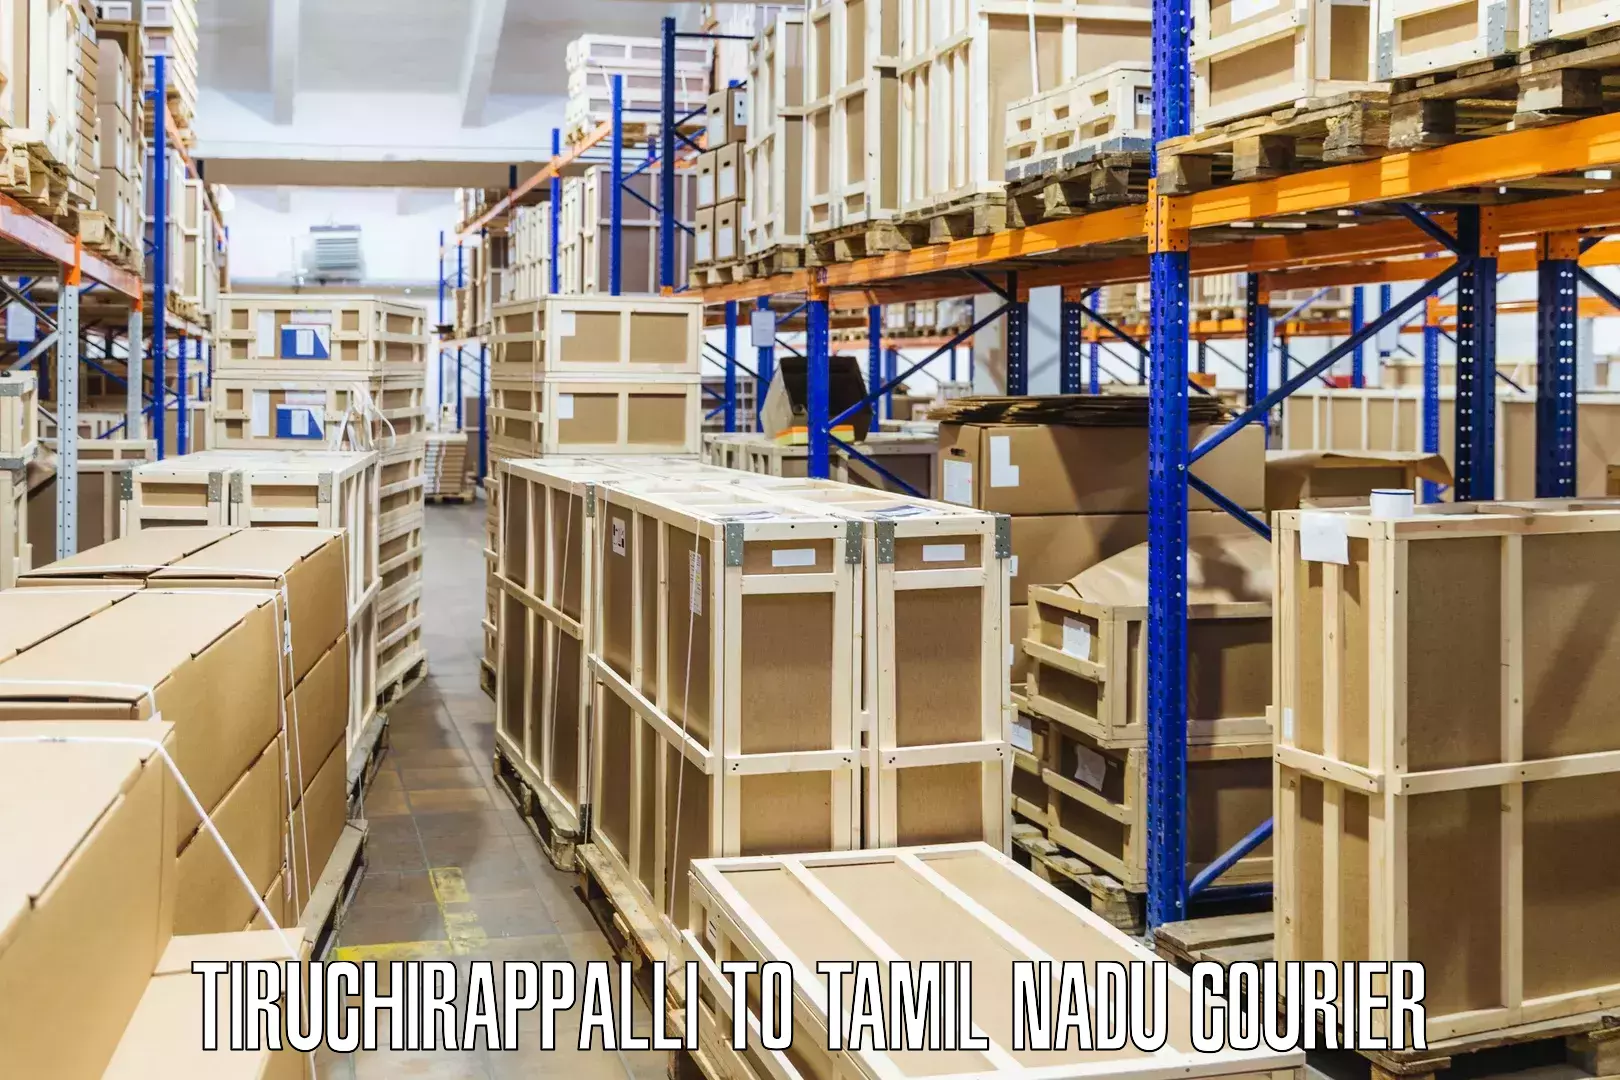 Specialized courier services Tiruchirappalli to Tamil Nadu